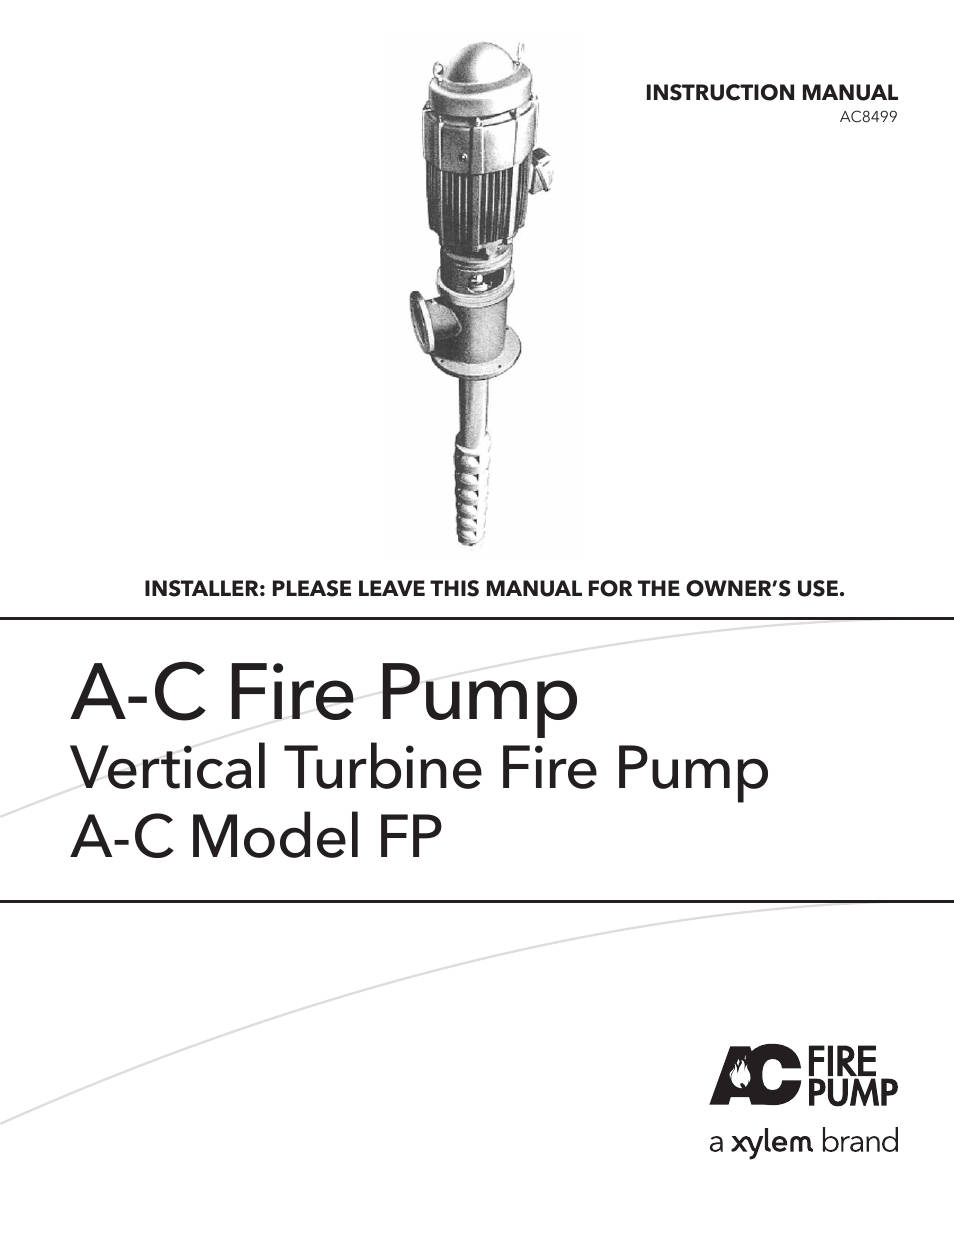 A-C Fire Pump – Vertical Turbine Fire Pump AC8499